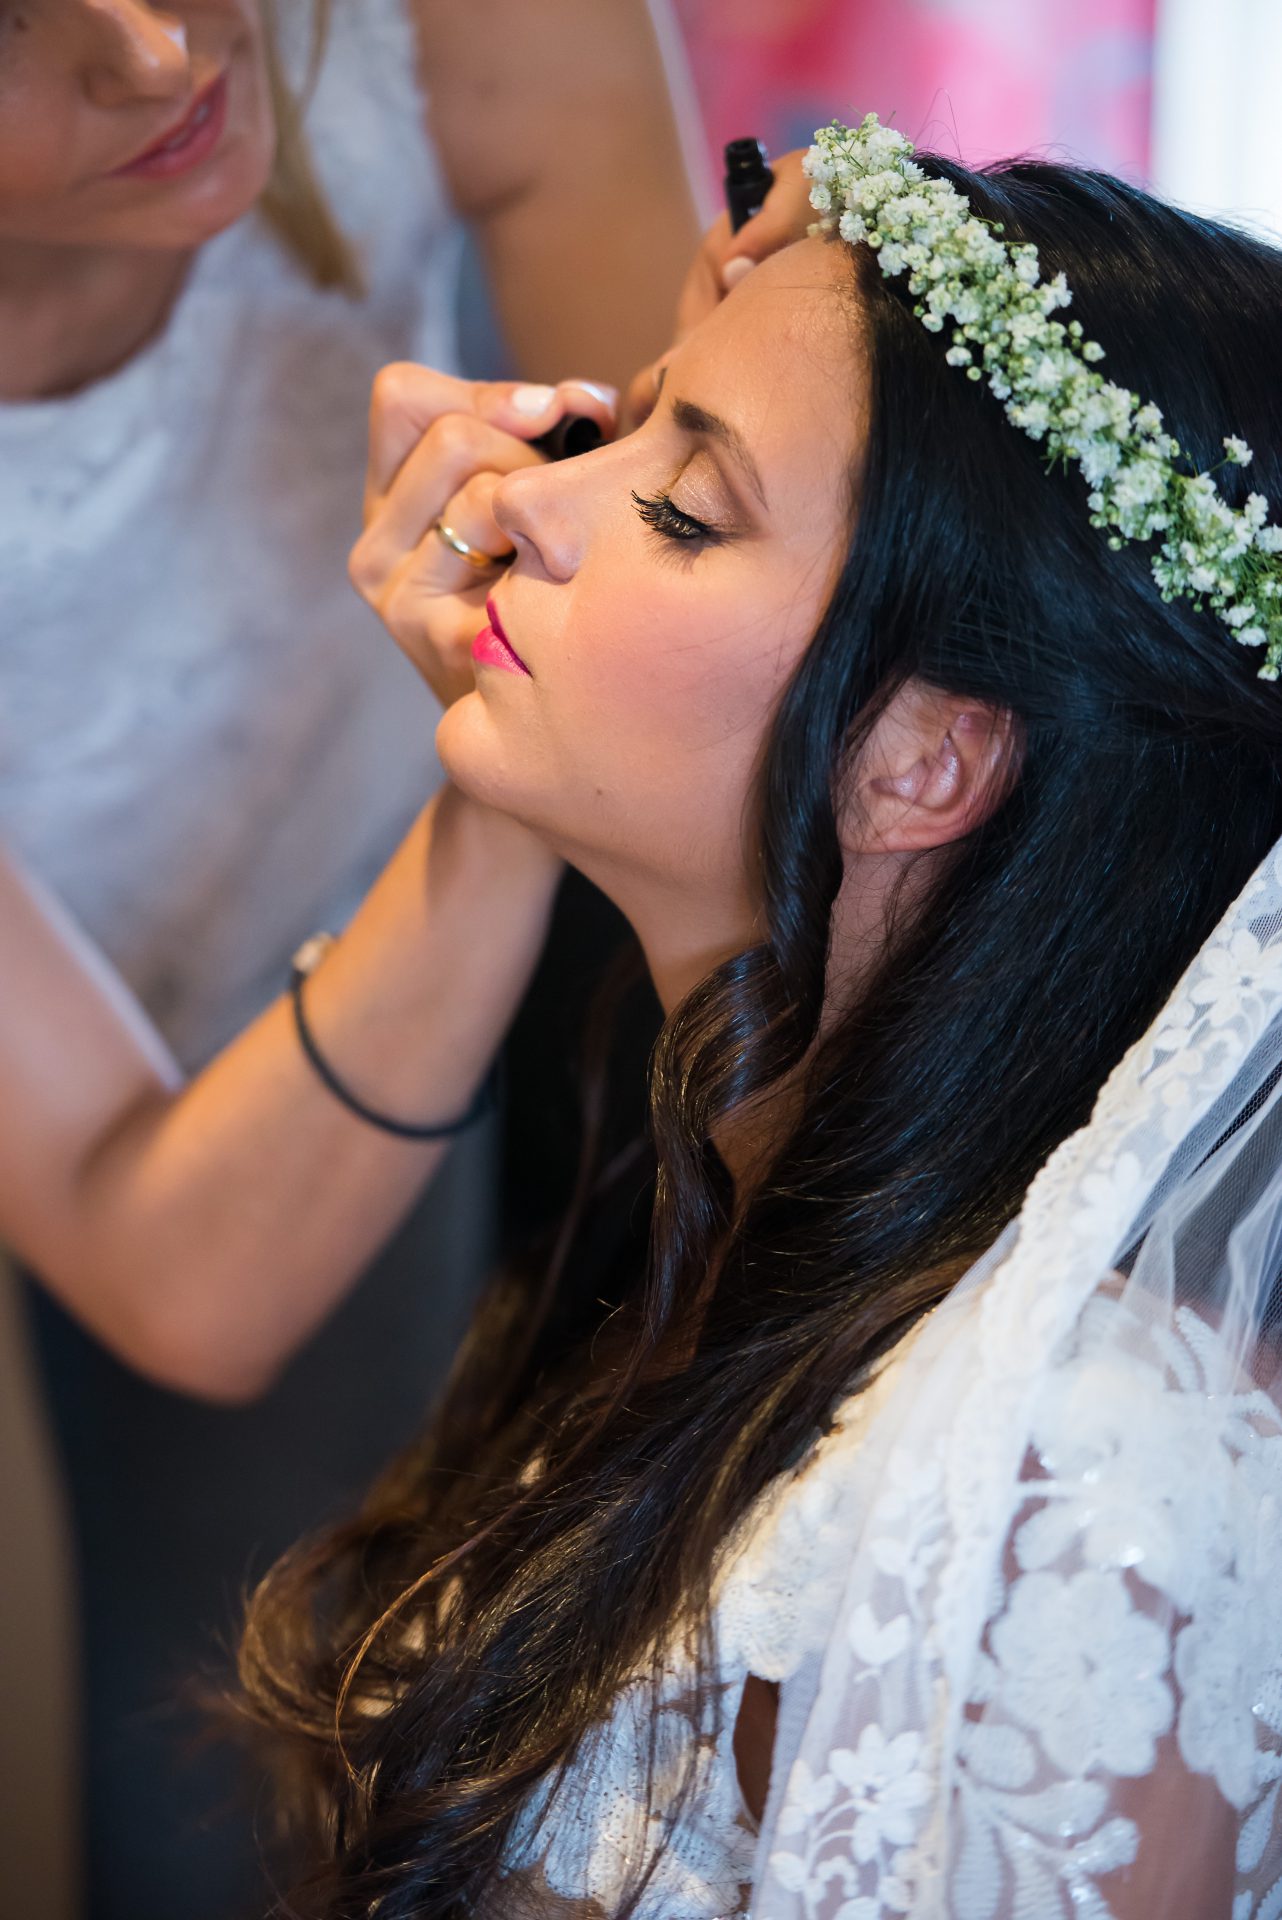 Μακιγιάζ νύφης στην προετοιμασία για τον γάμο της